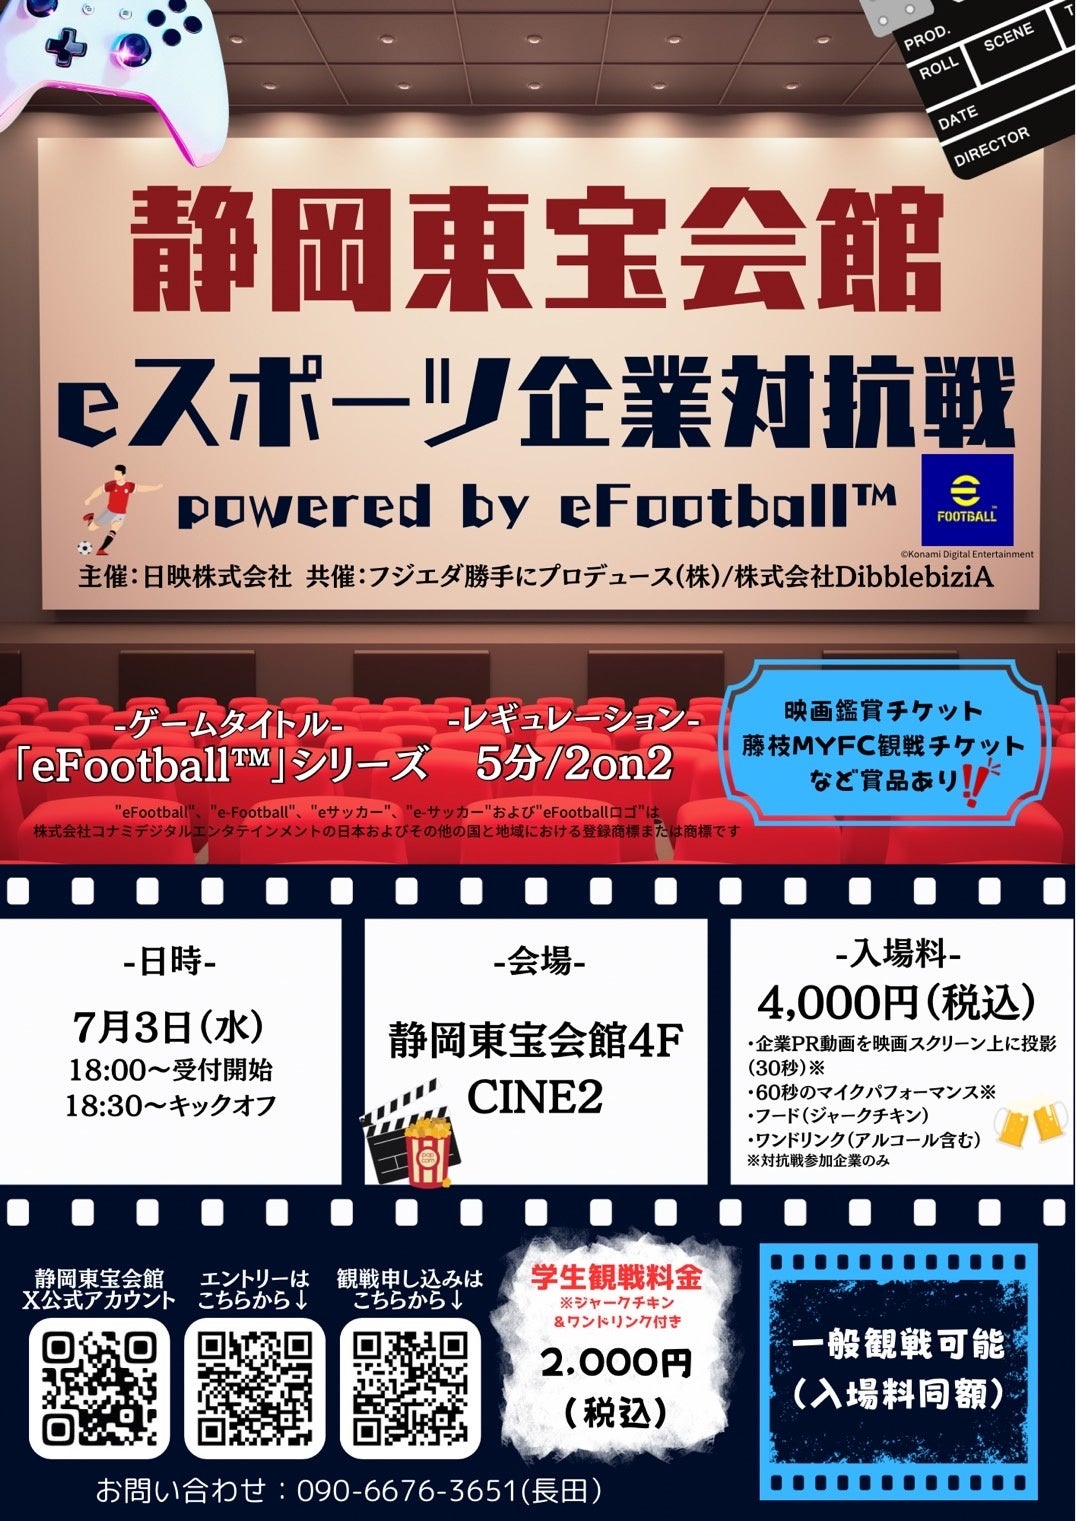 「静岡東宝会館 eスポーツ企業対抗戦 powerd by eFootball™」7月3日に開催、エントリー及び観戦の受付開始